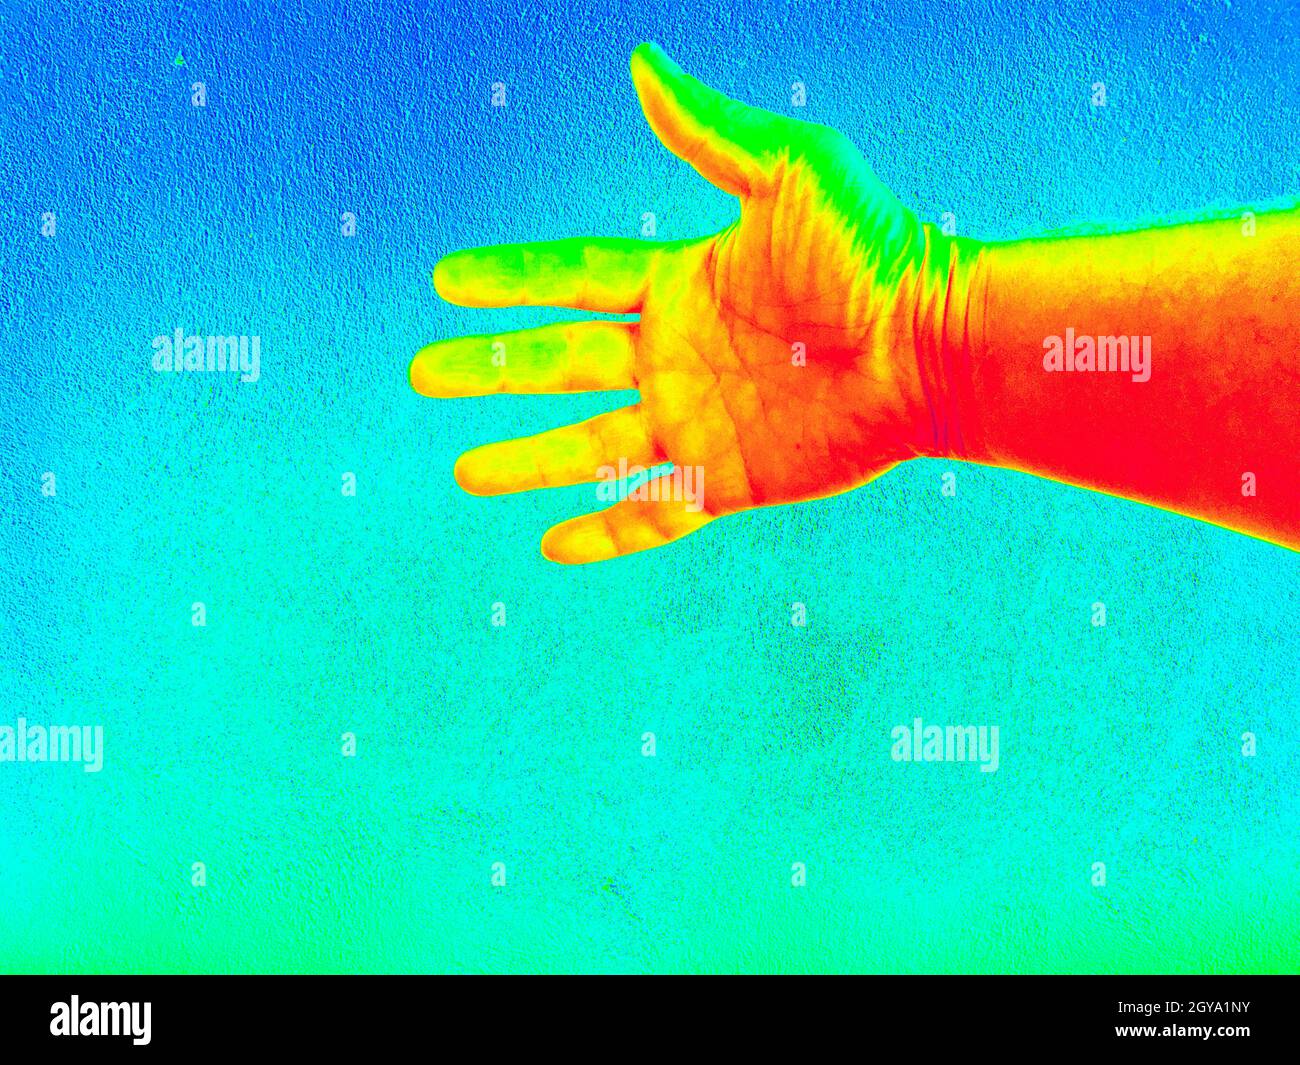 Wärmebild-Aufzeichnungen von Temperaturunterschieden im Infrarotlicht Stockfoto